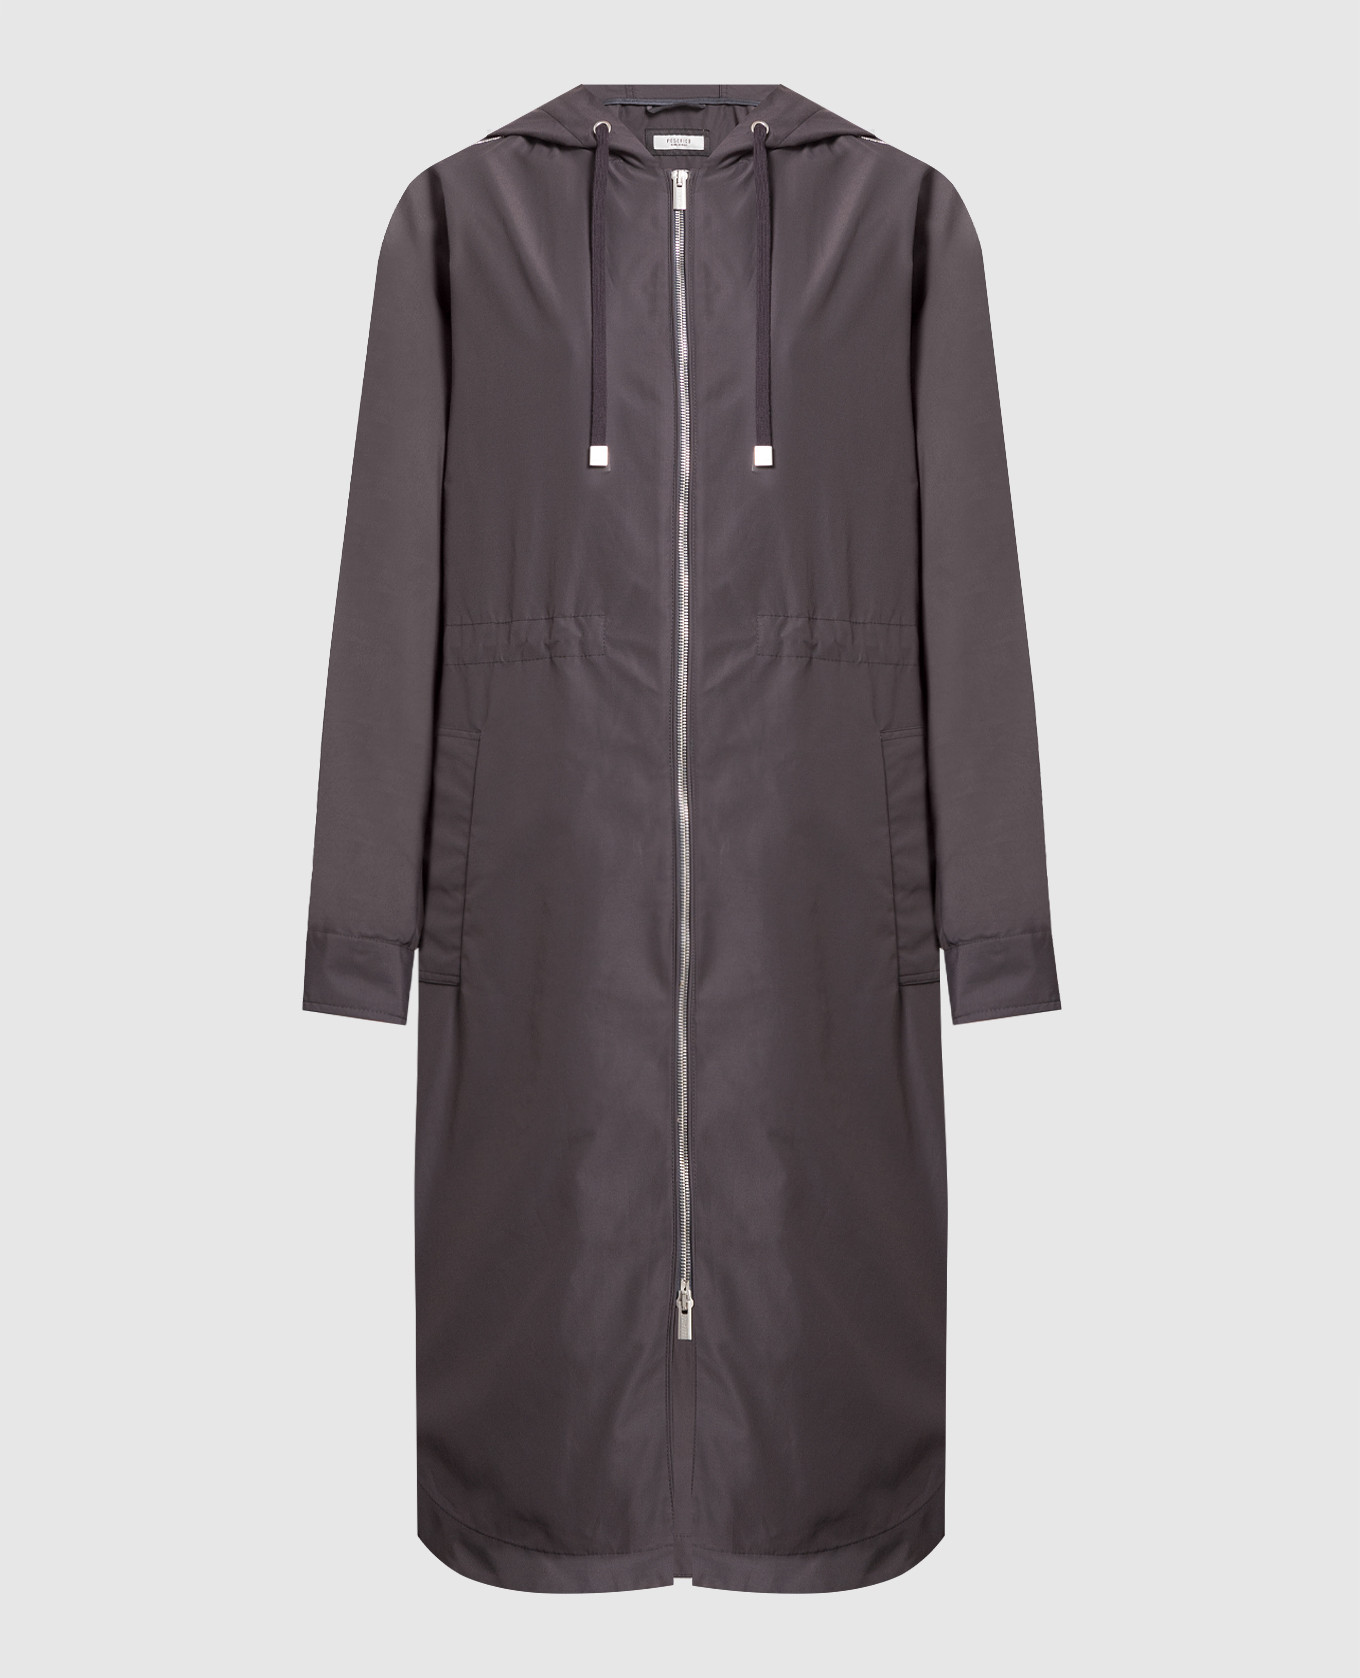 Gray raincoat with monil chain